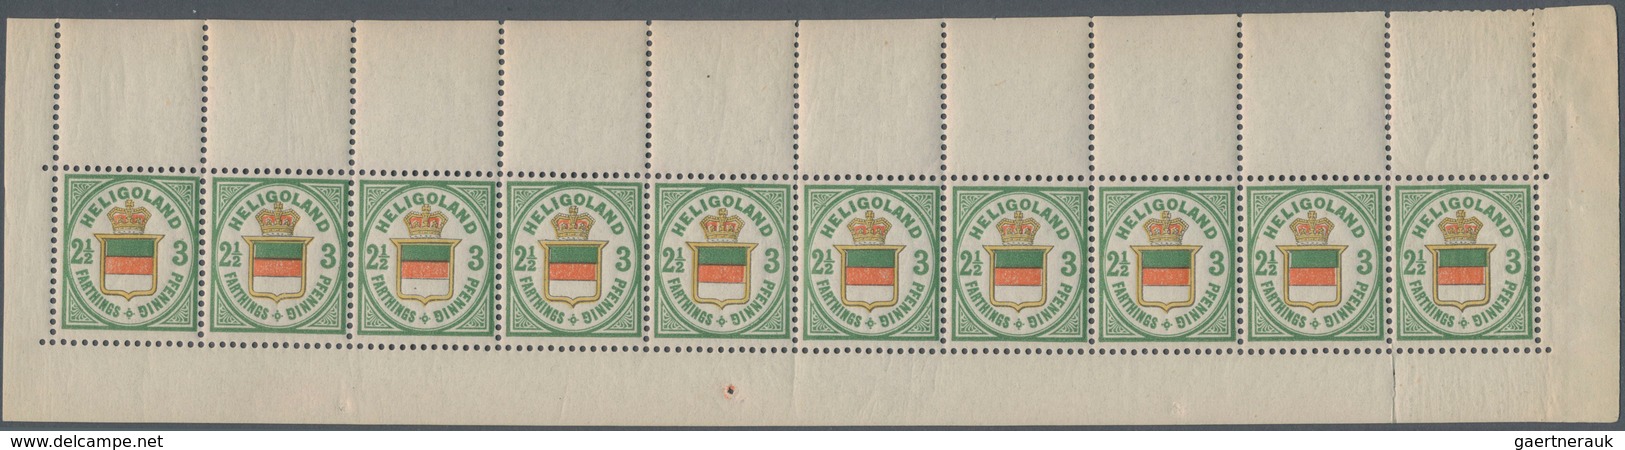 Helgoland - Marken und Briefe: 1867/1890, Zusammenstellung mit Marken und Belegen, dabei u.a. MiNr.